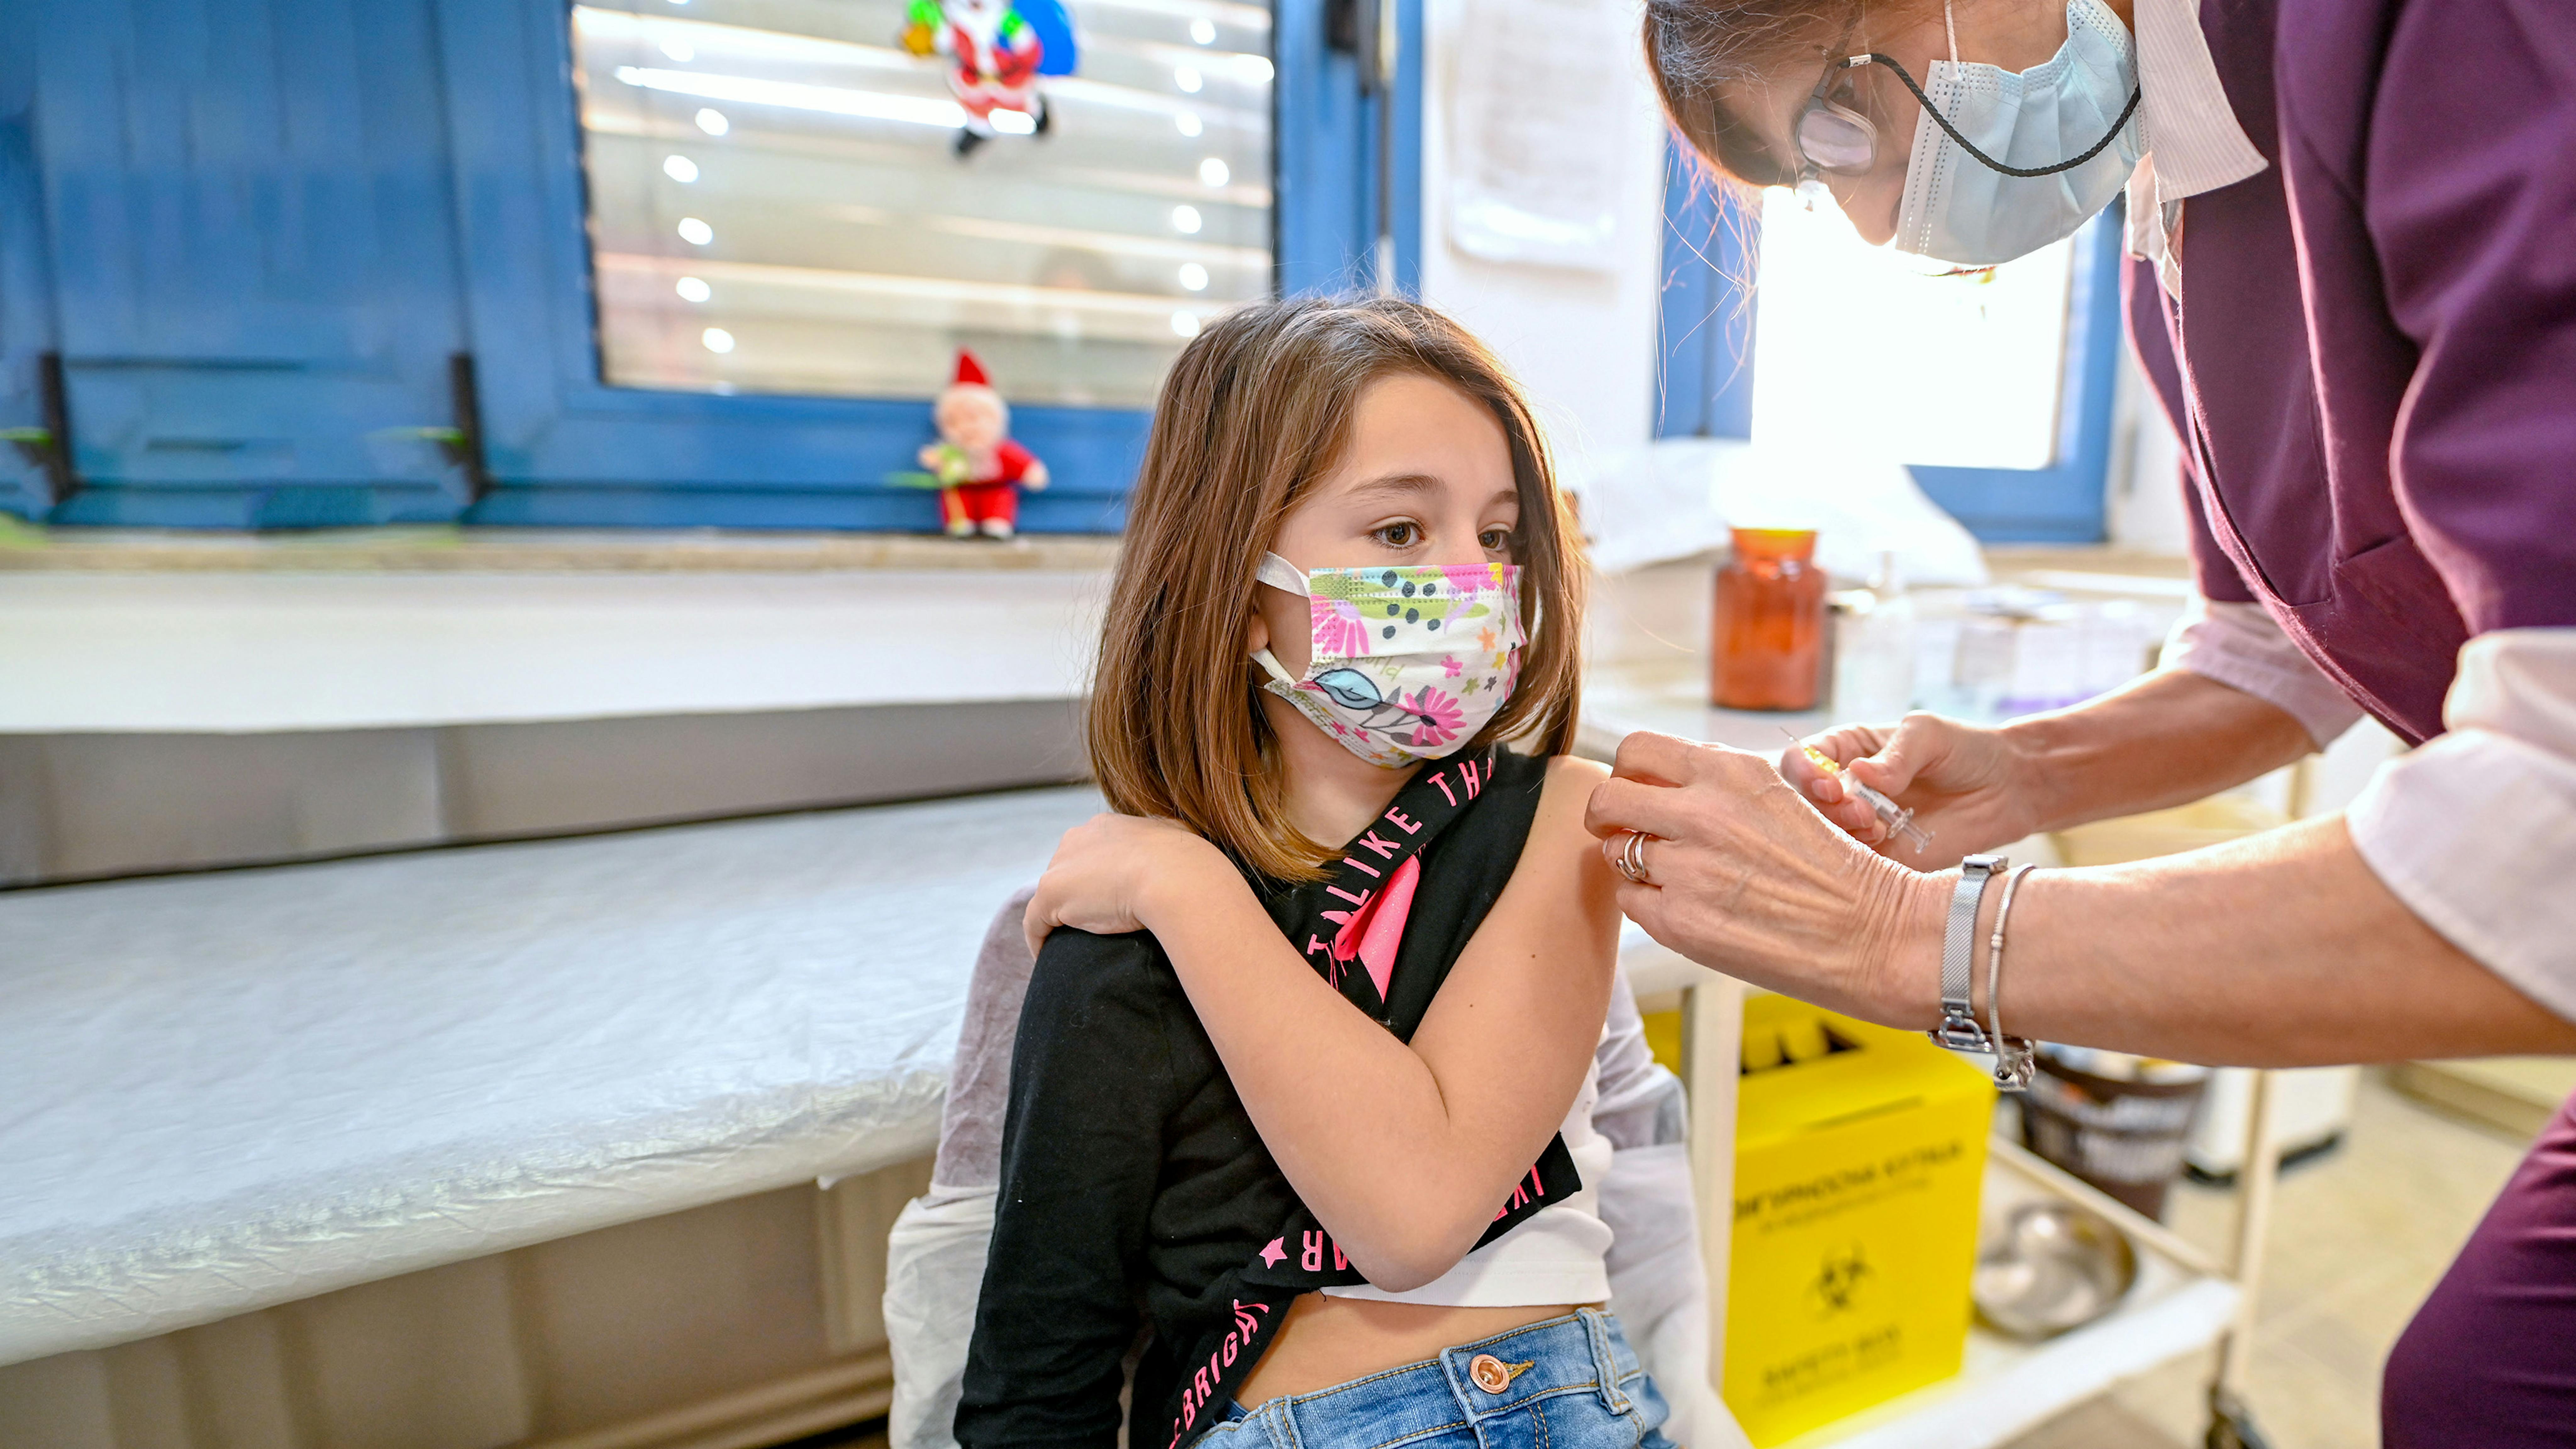 Macedonia - Anisija, sette anni, resta ferma mentre l'infermiera le sta somministrando un vaccino nel policlinico 